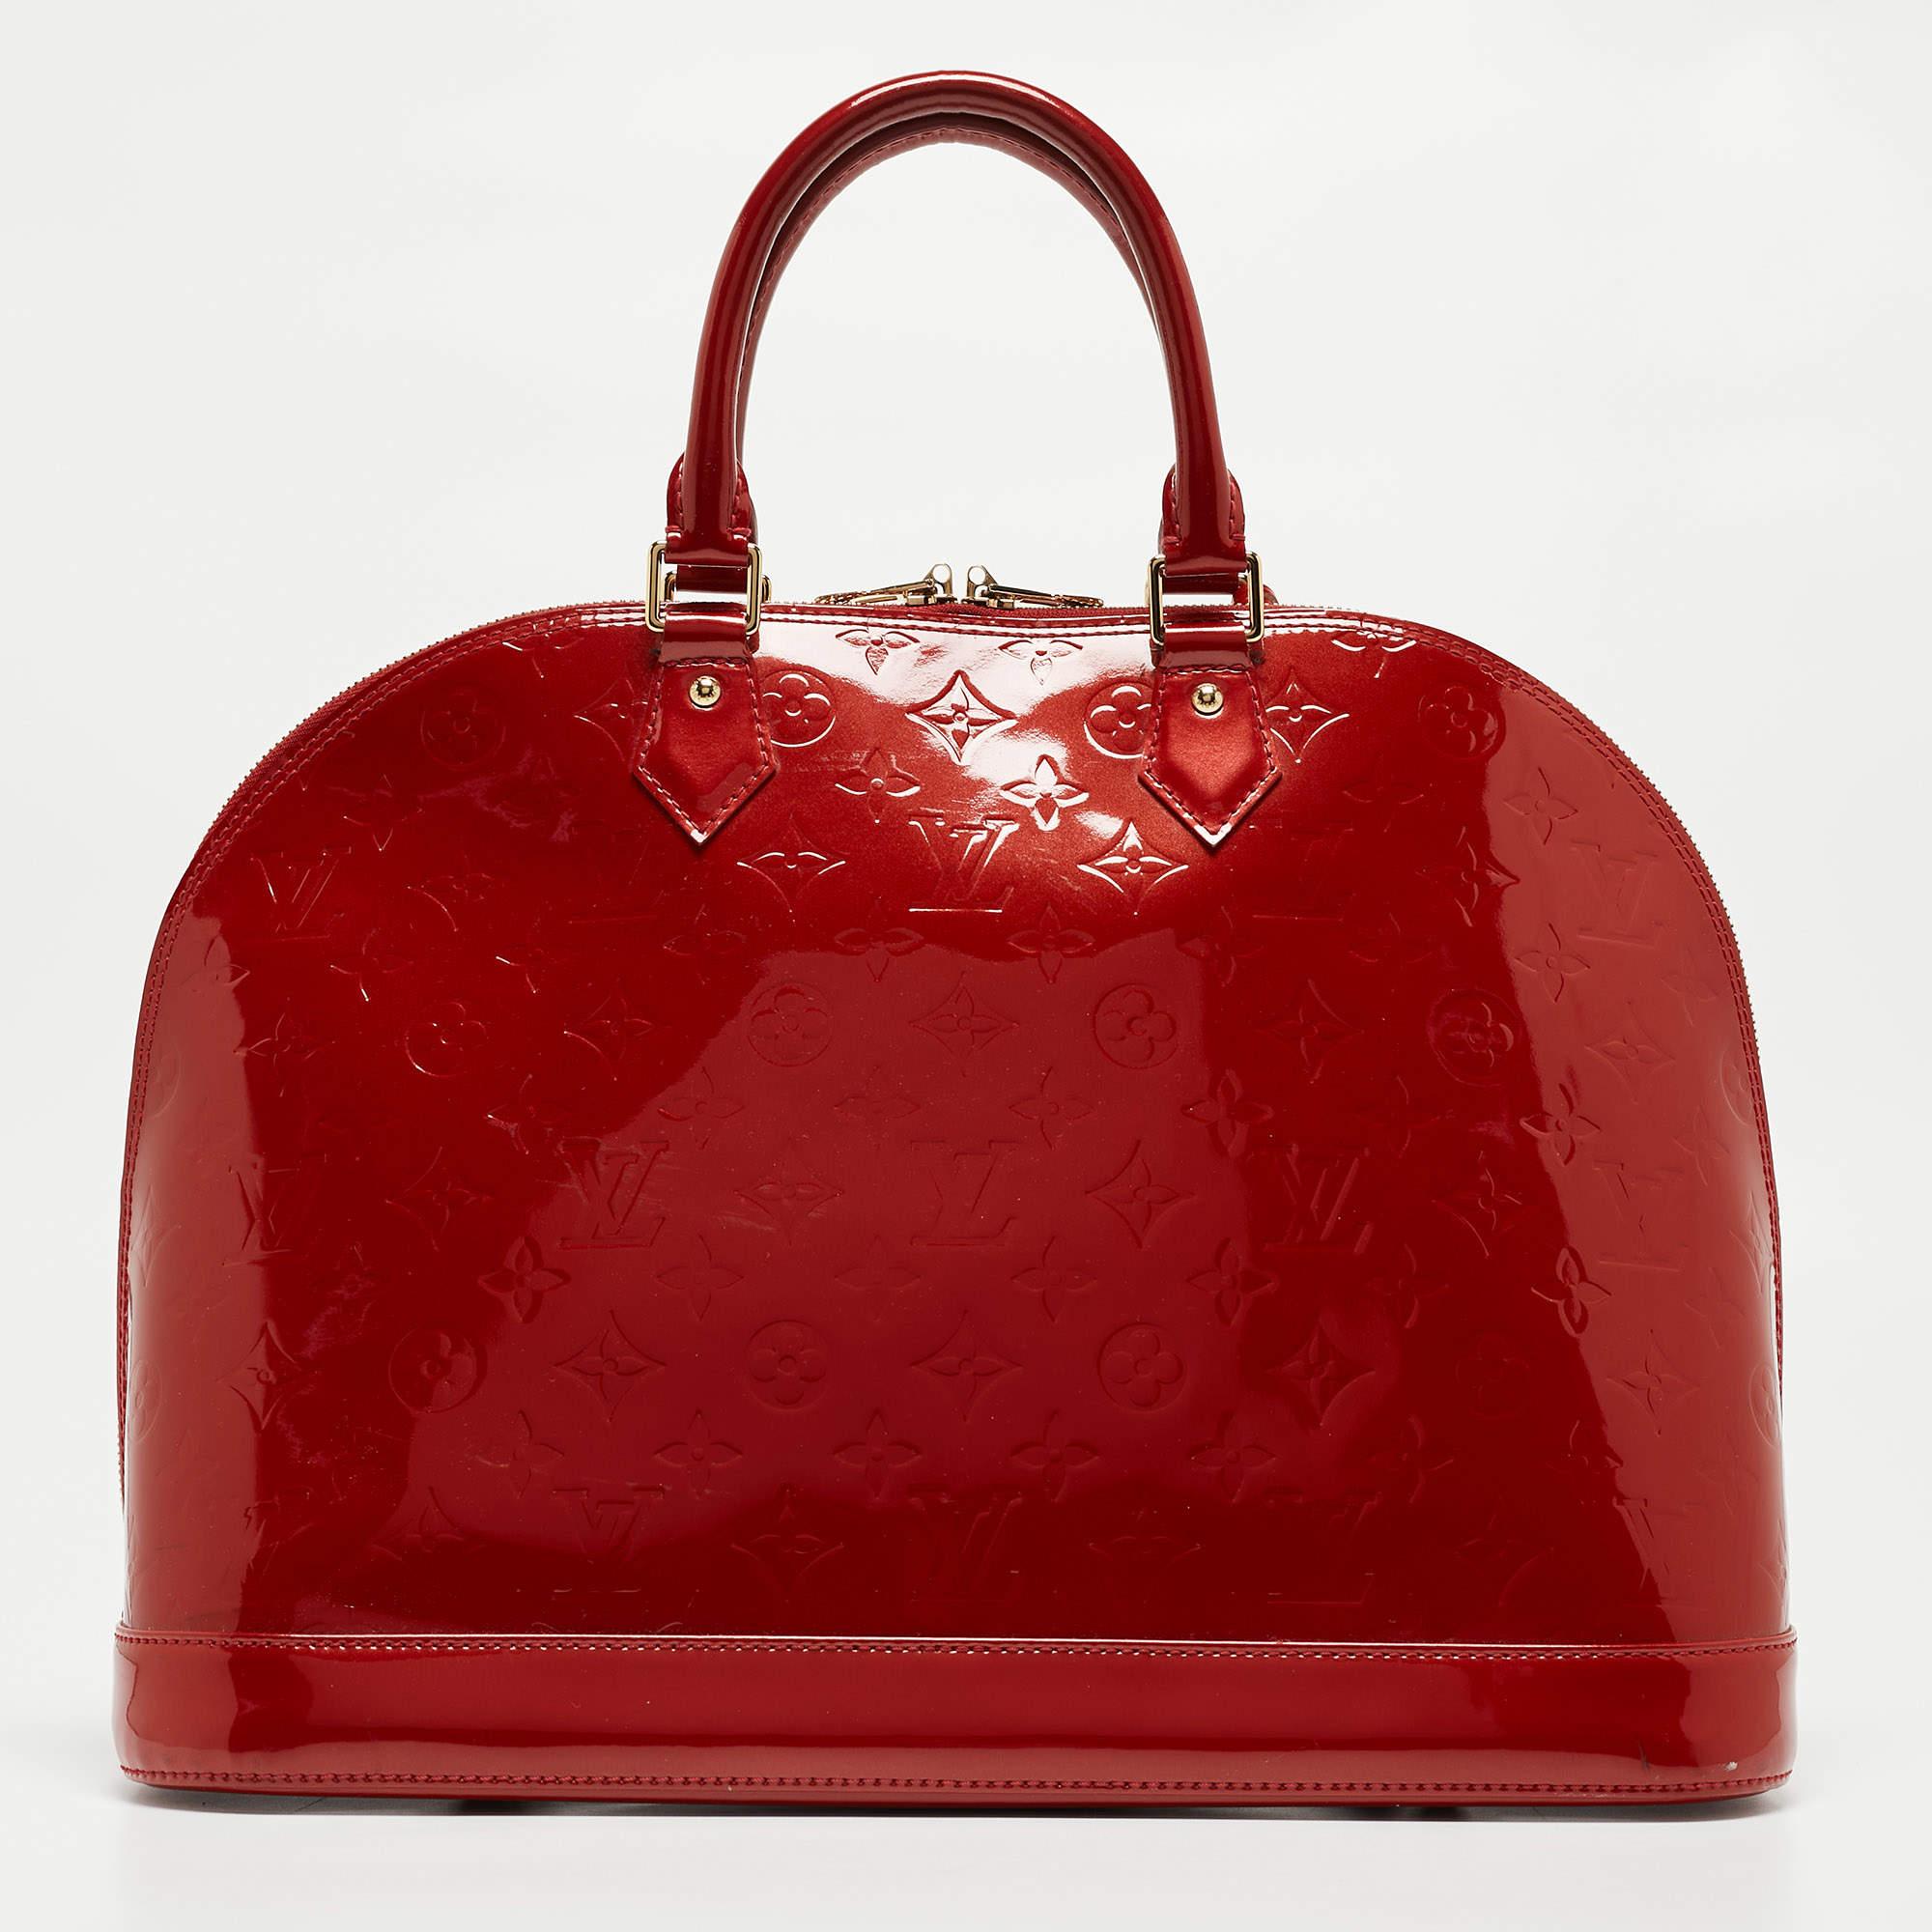 Les sacs à main Louis Vuitton sont très appréciés en raison de leur style et de leur fonctionnalité. Ce sac, comme tous leurs designs, est durable et élégant. D'une finition soignée, le sac est conçu pour offrir une expérience luxueuse. L'intérieur